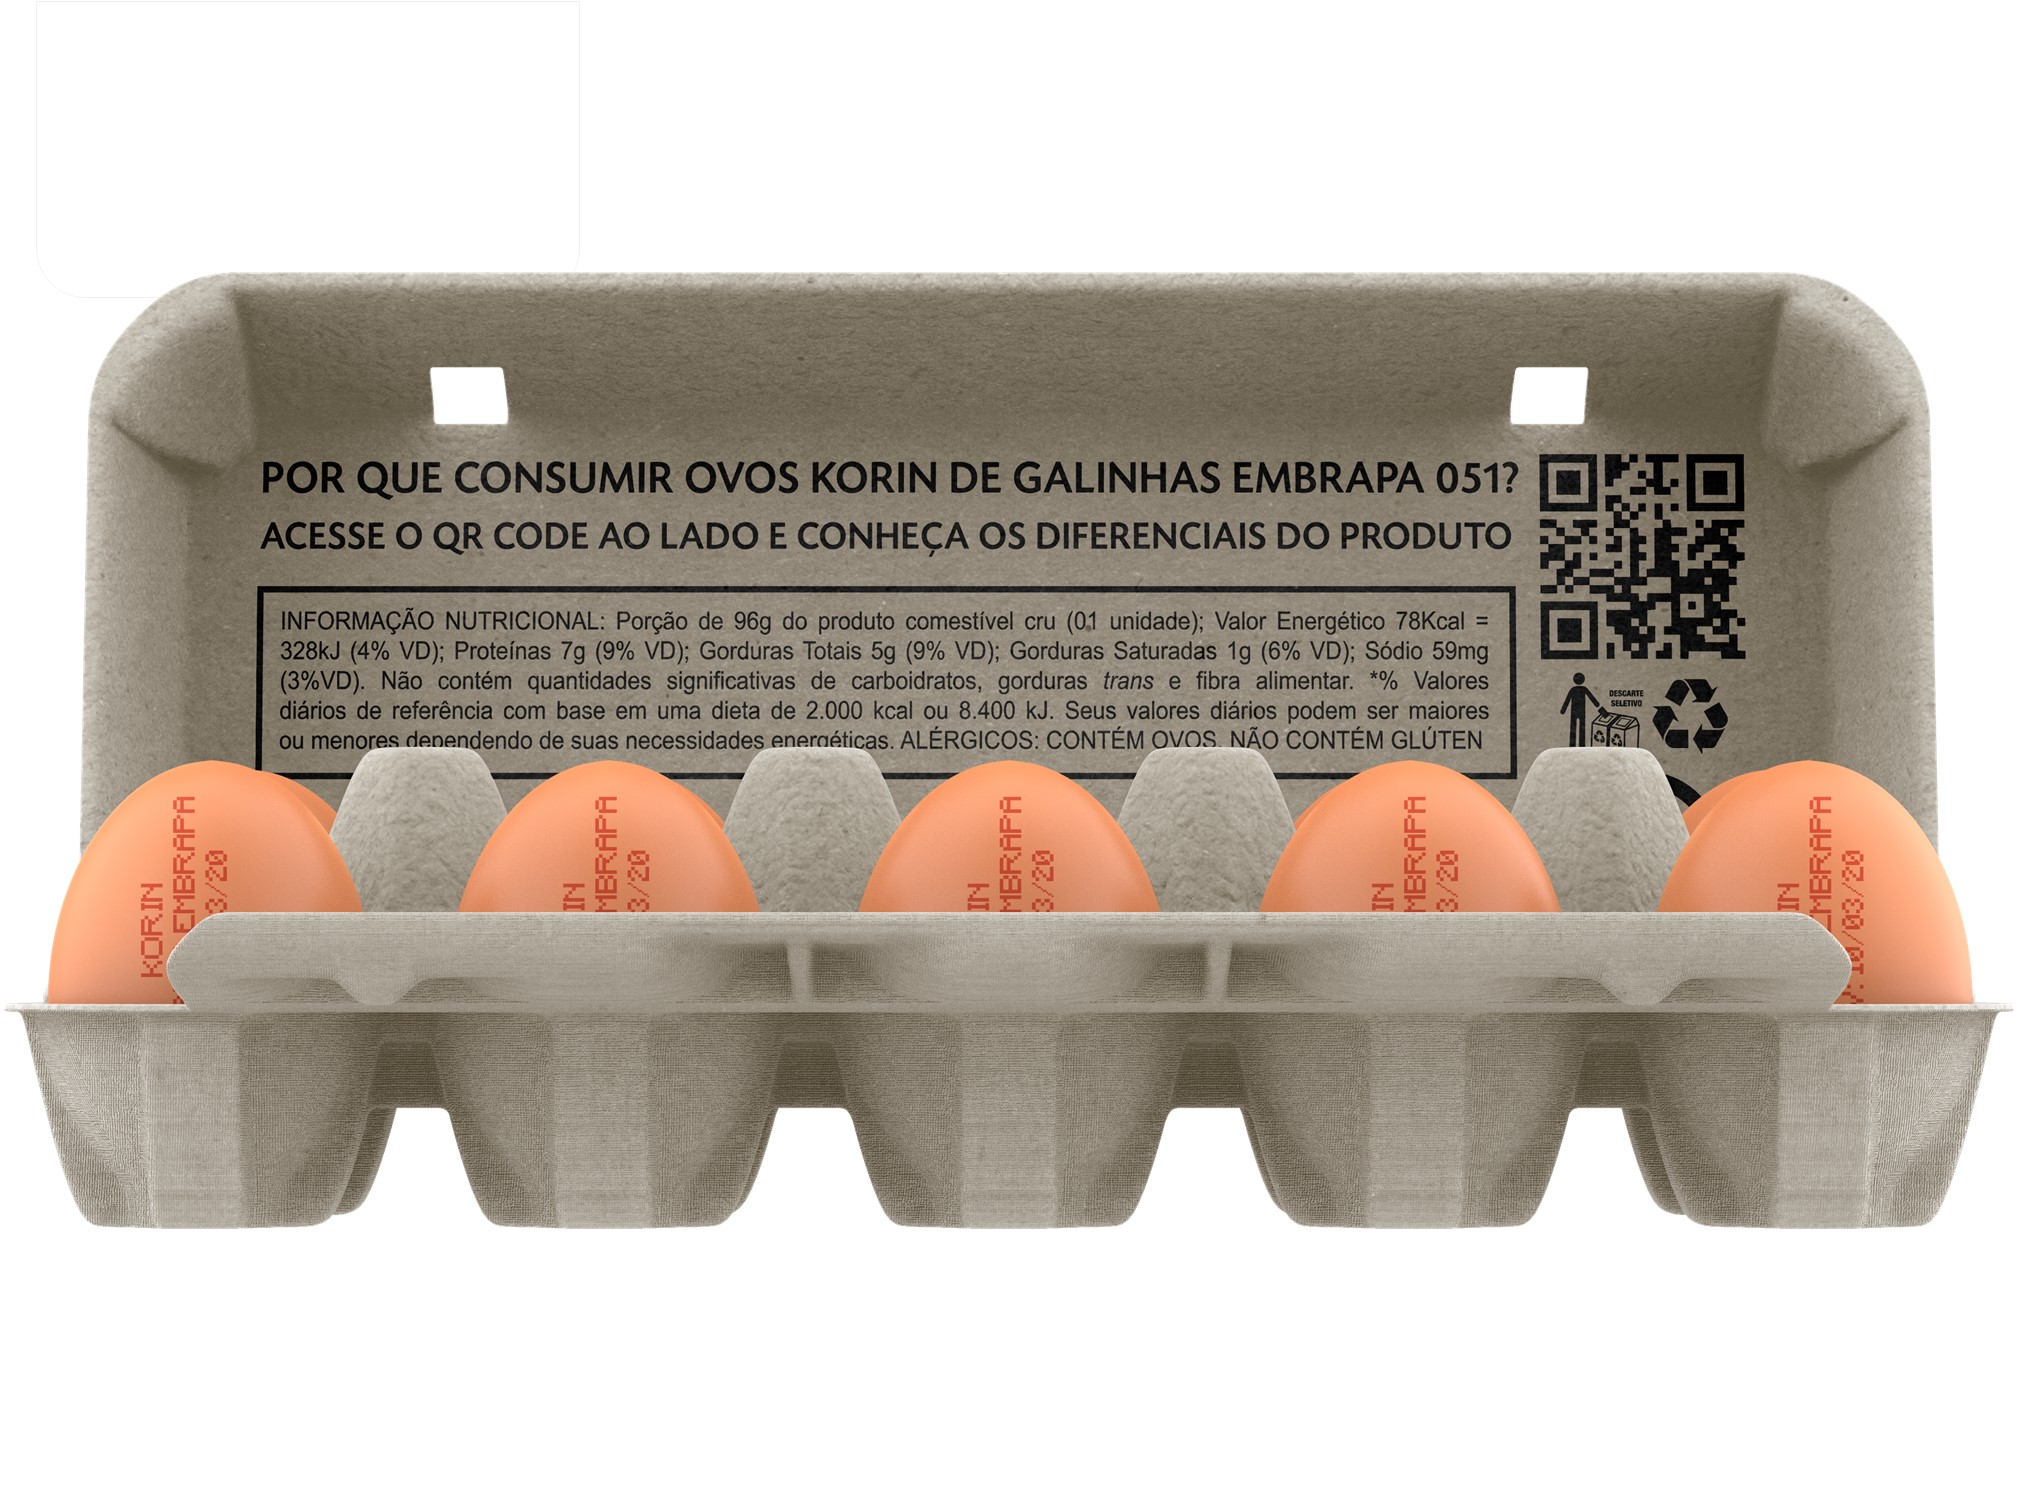 Ovos caipira Korin-Embrapa são oficialmente lançados em matéria do jornal Valor Econômico